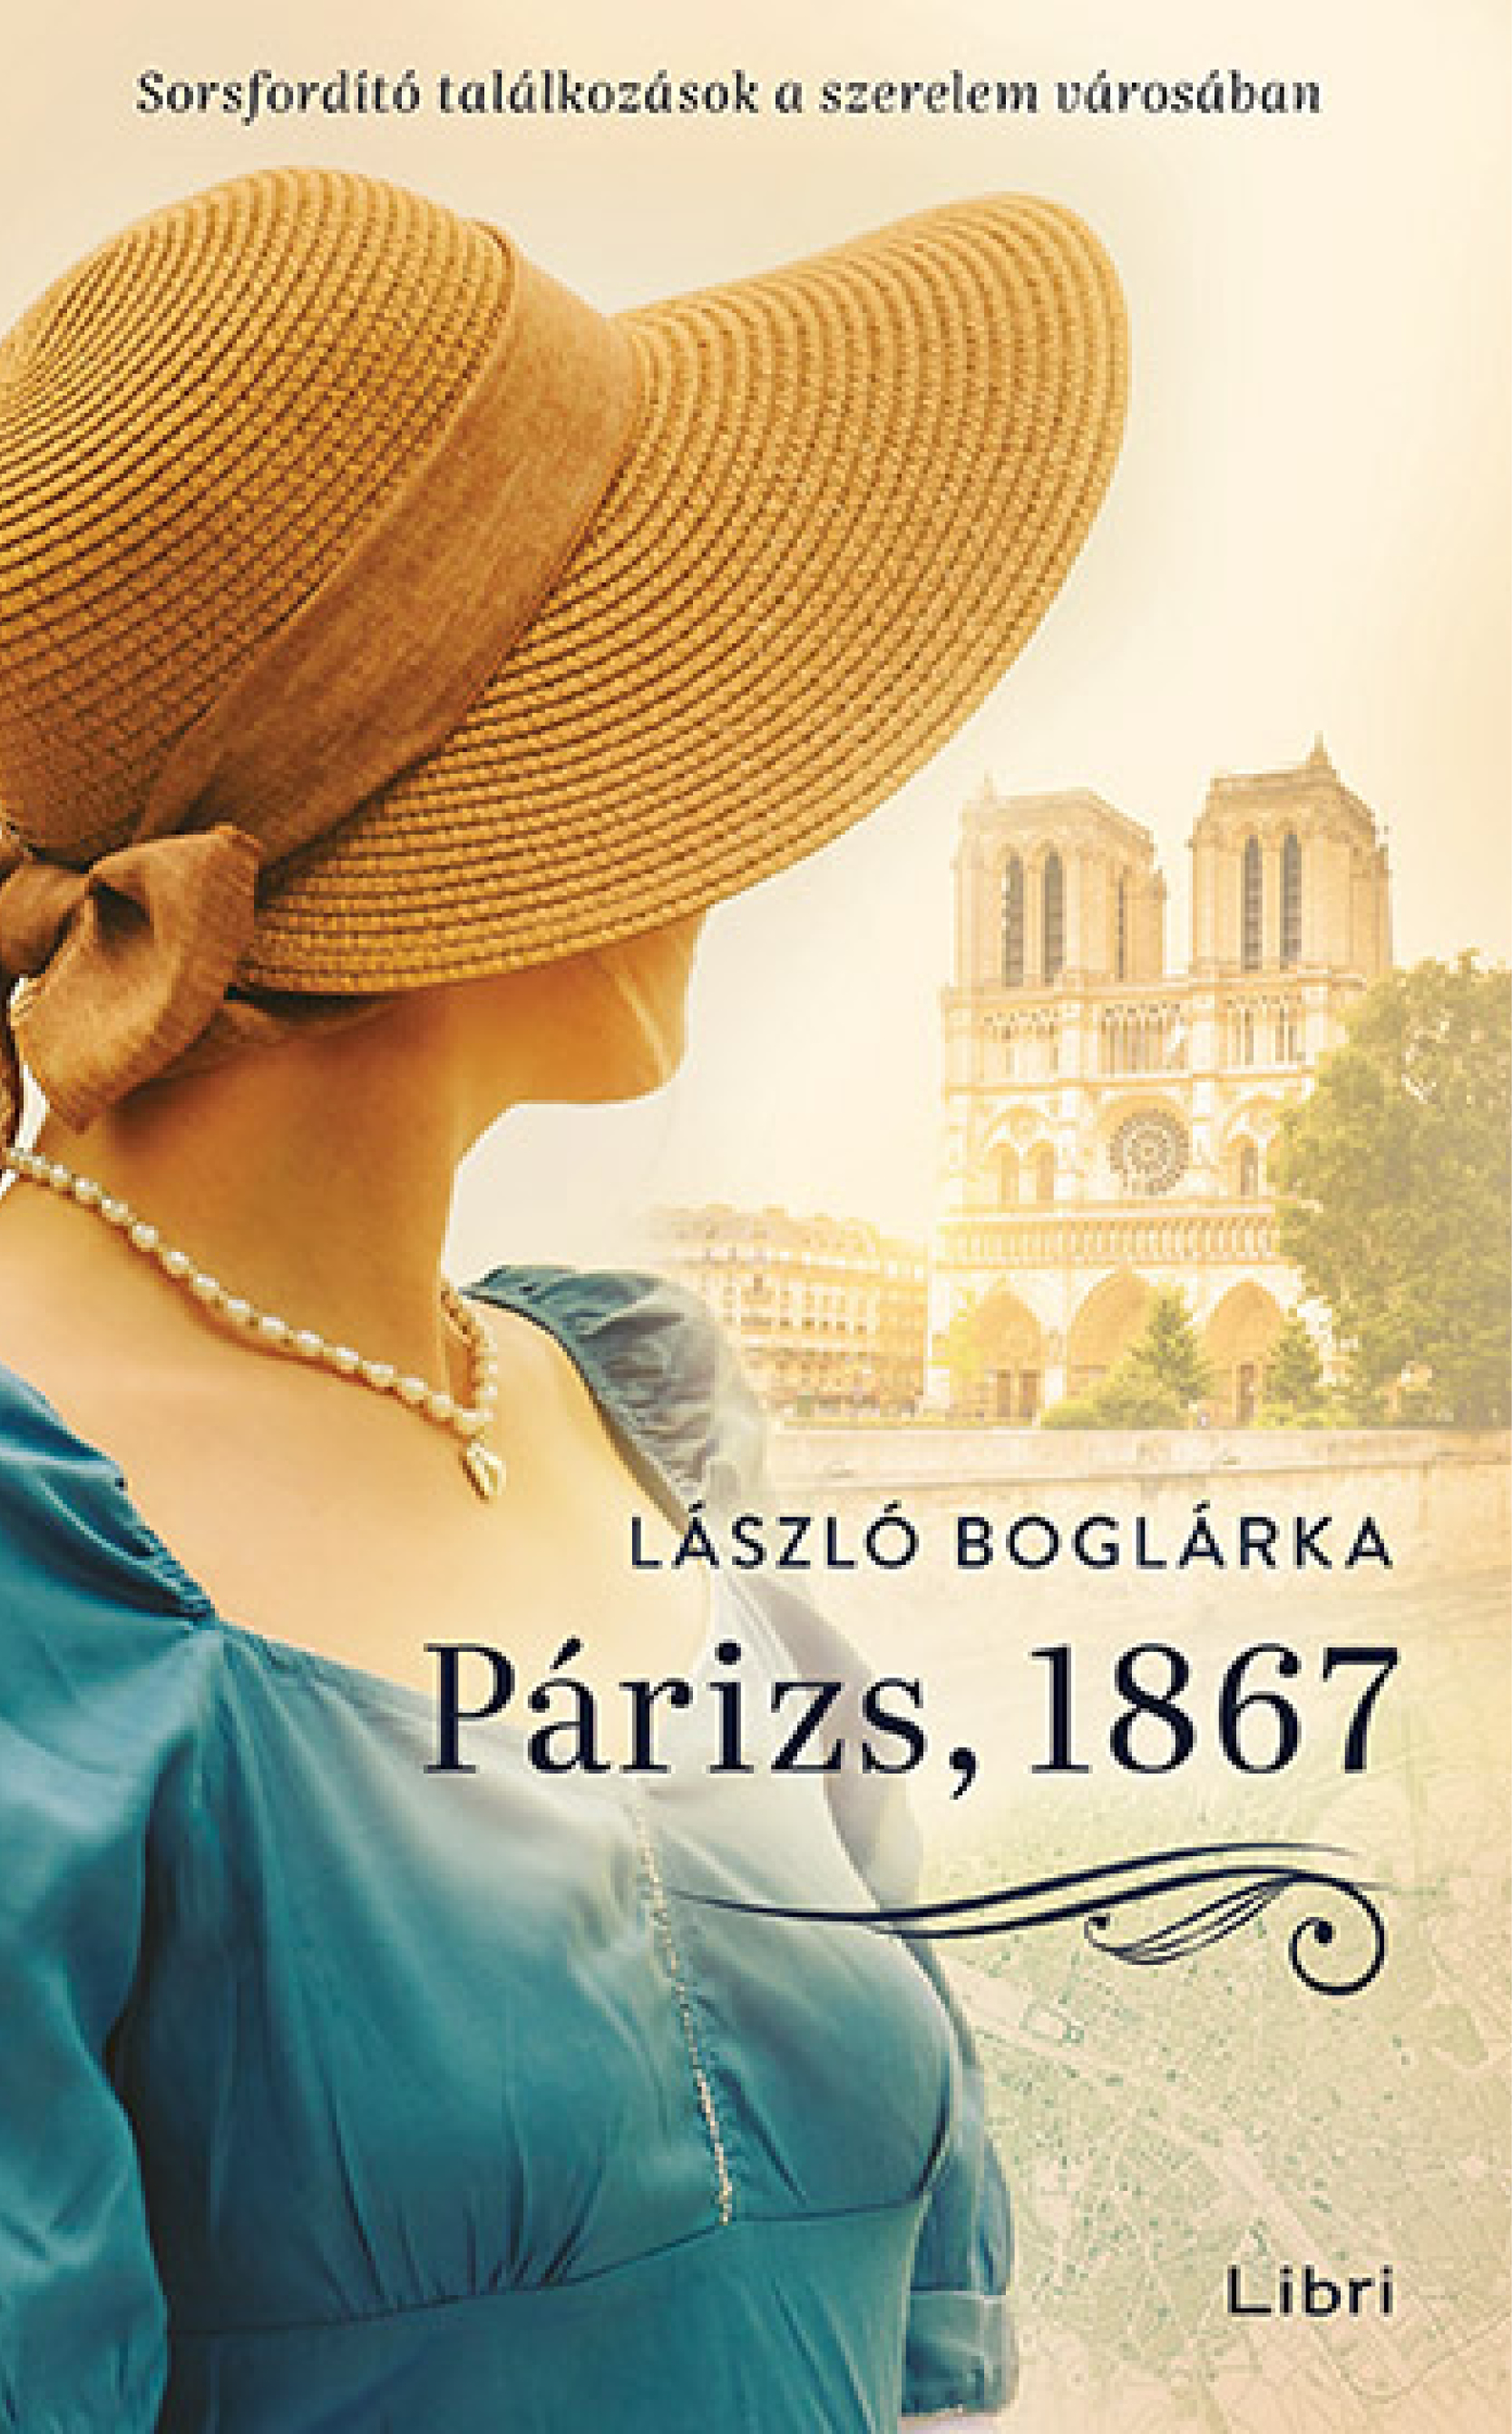 László Boglárka: Párizs, 1867 - Sorsfordító találkozások a szerelem városában